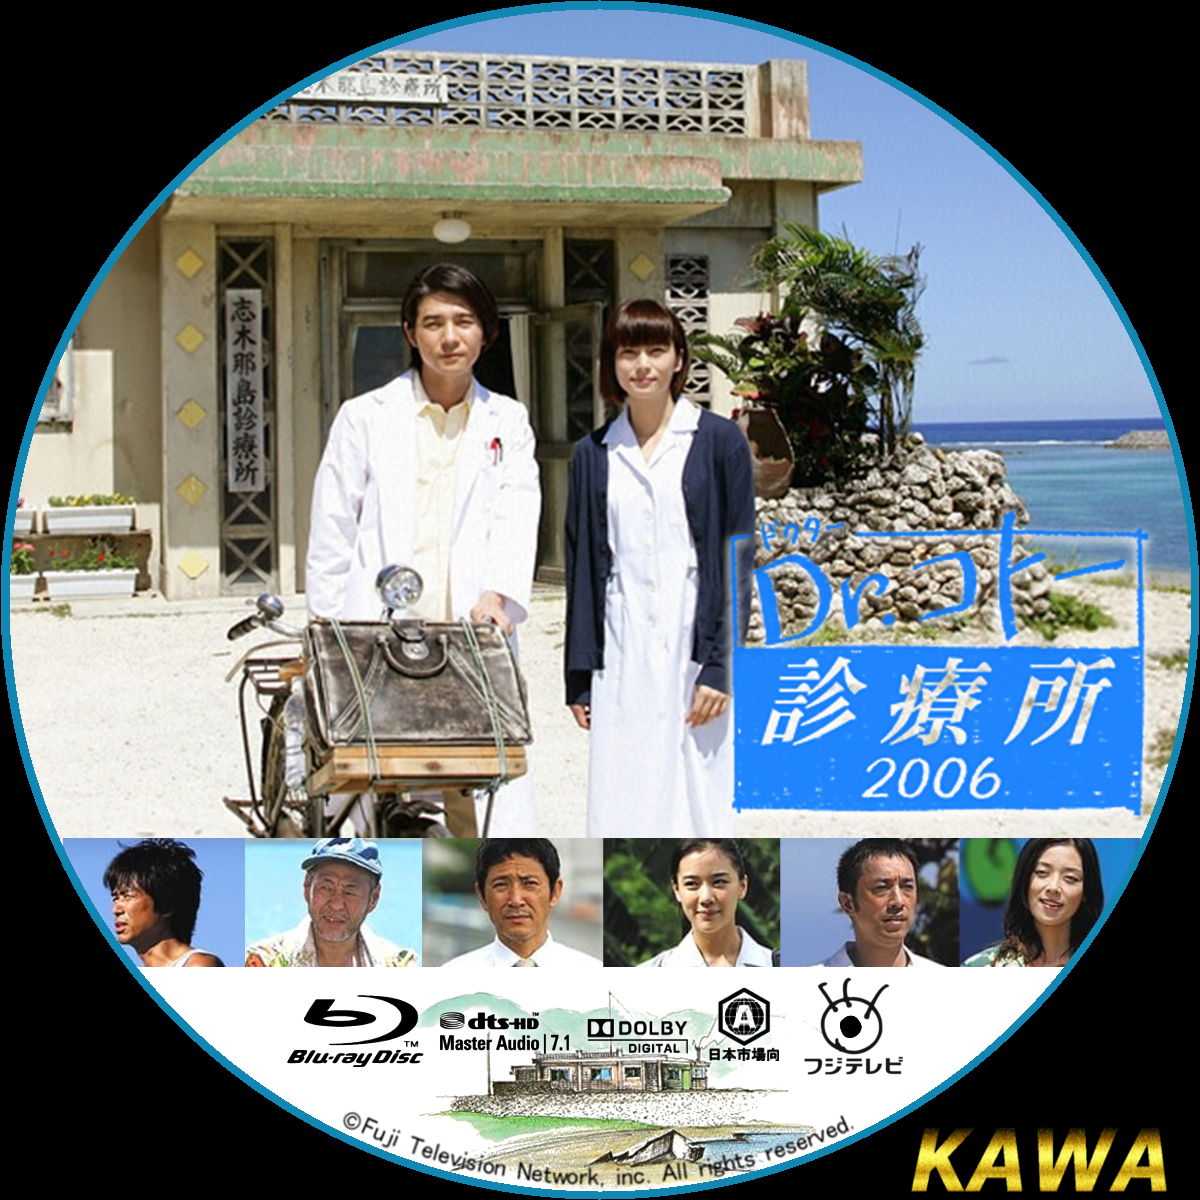 特価好評 Dr.コトー診療所2006 スペシャル エディション DVD-BOX 7枚組